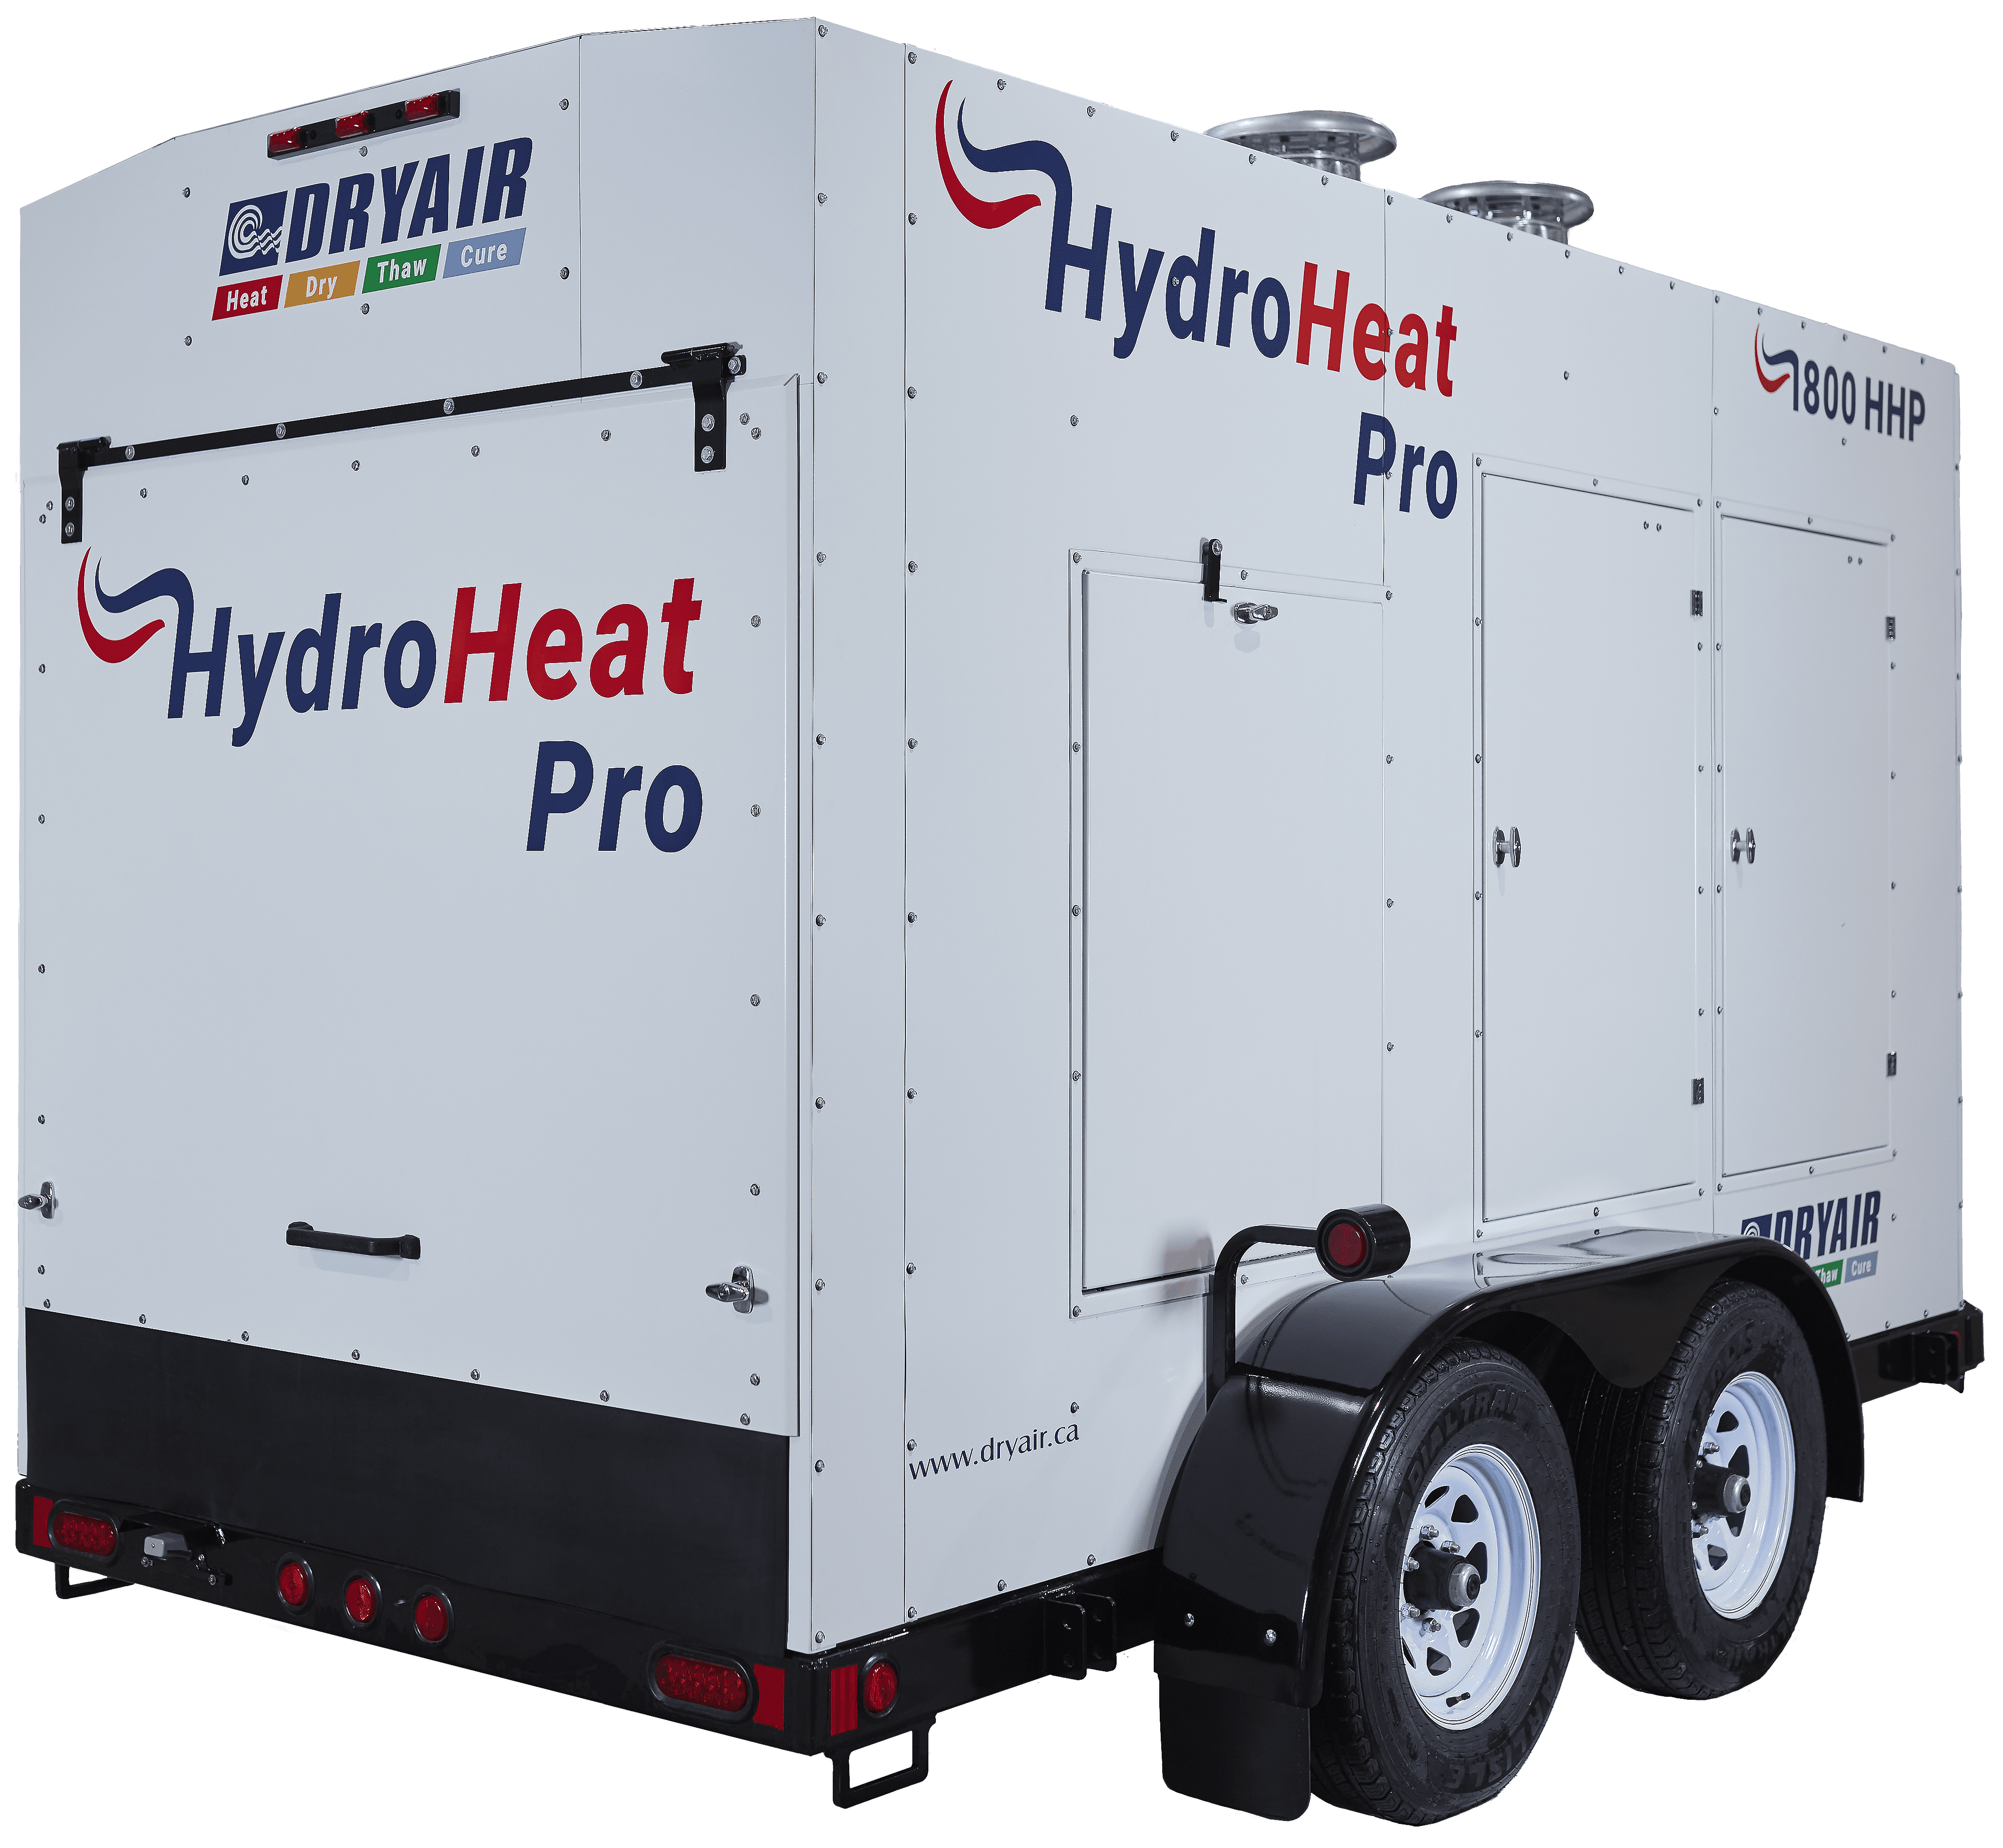 1800 HHP Hydro Heat Pro